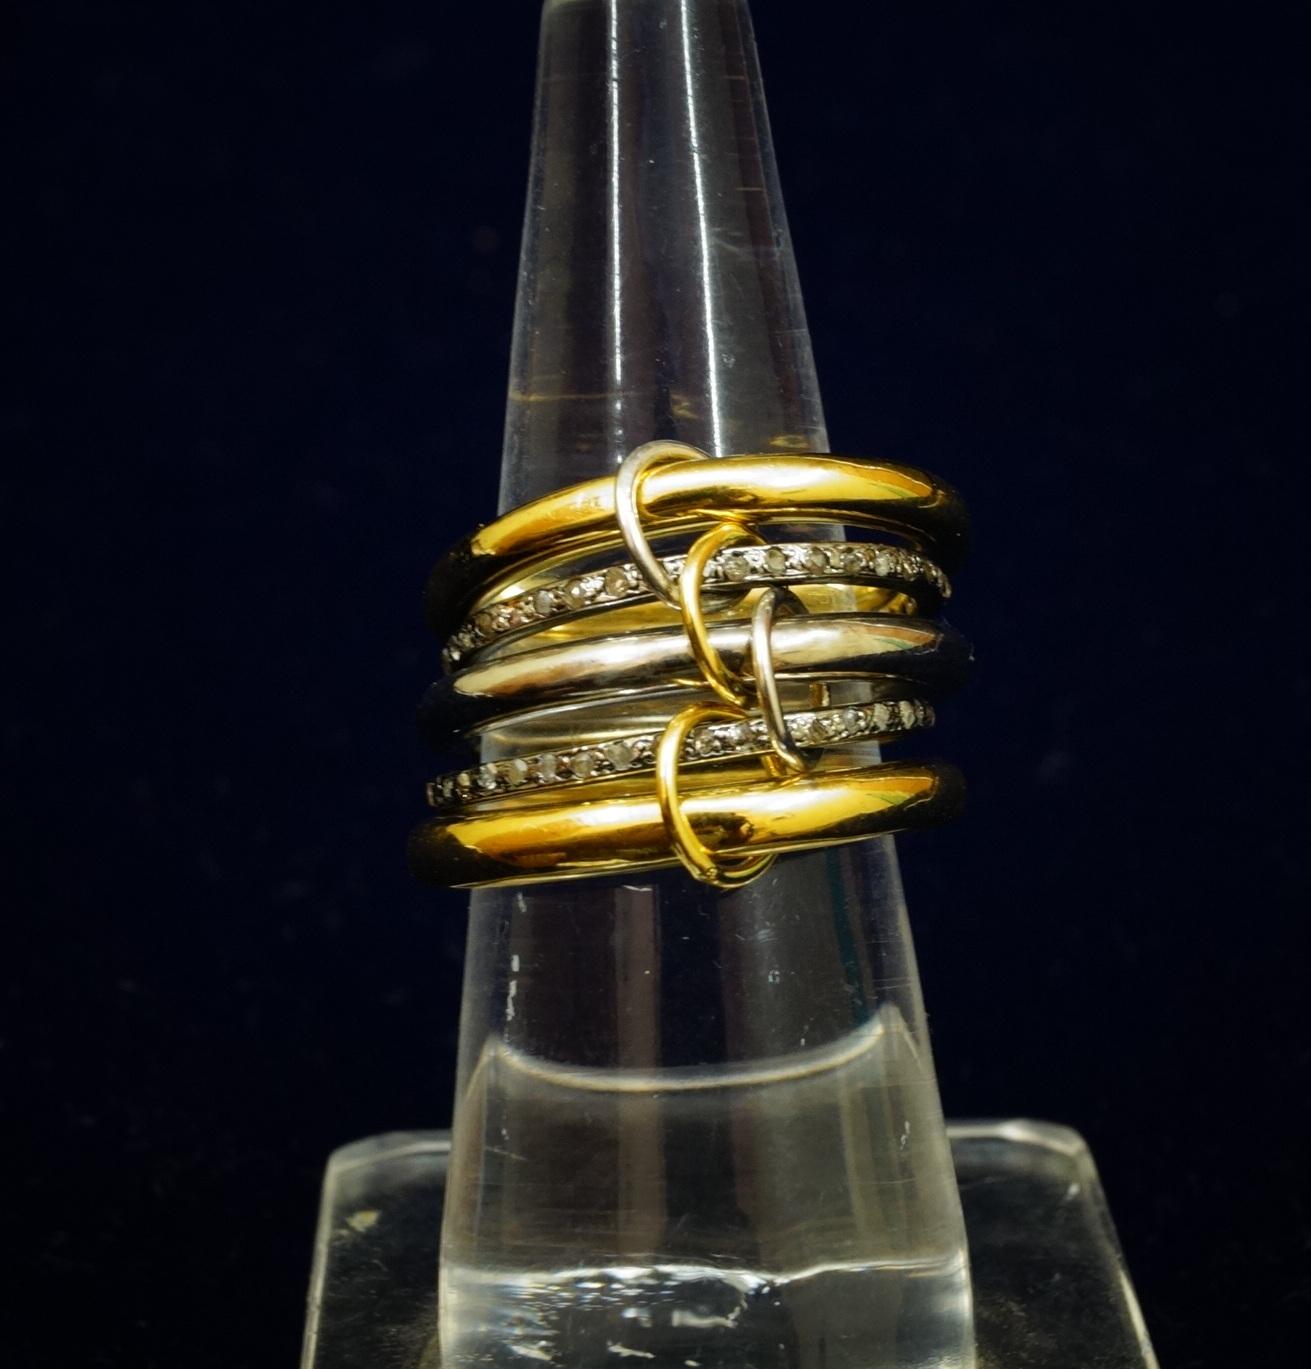 Stapelring Natürliche Pave-Diamanten Sterlingsilber Dual-Ton Stapel von fünf Ringen (Zeitgenössisch)